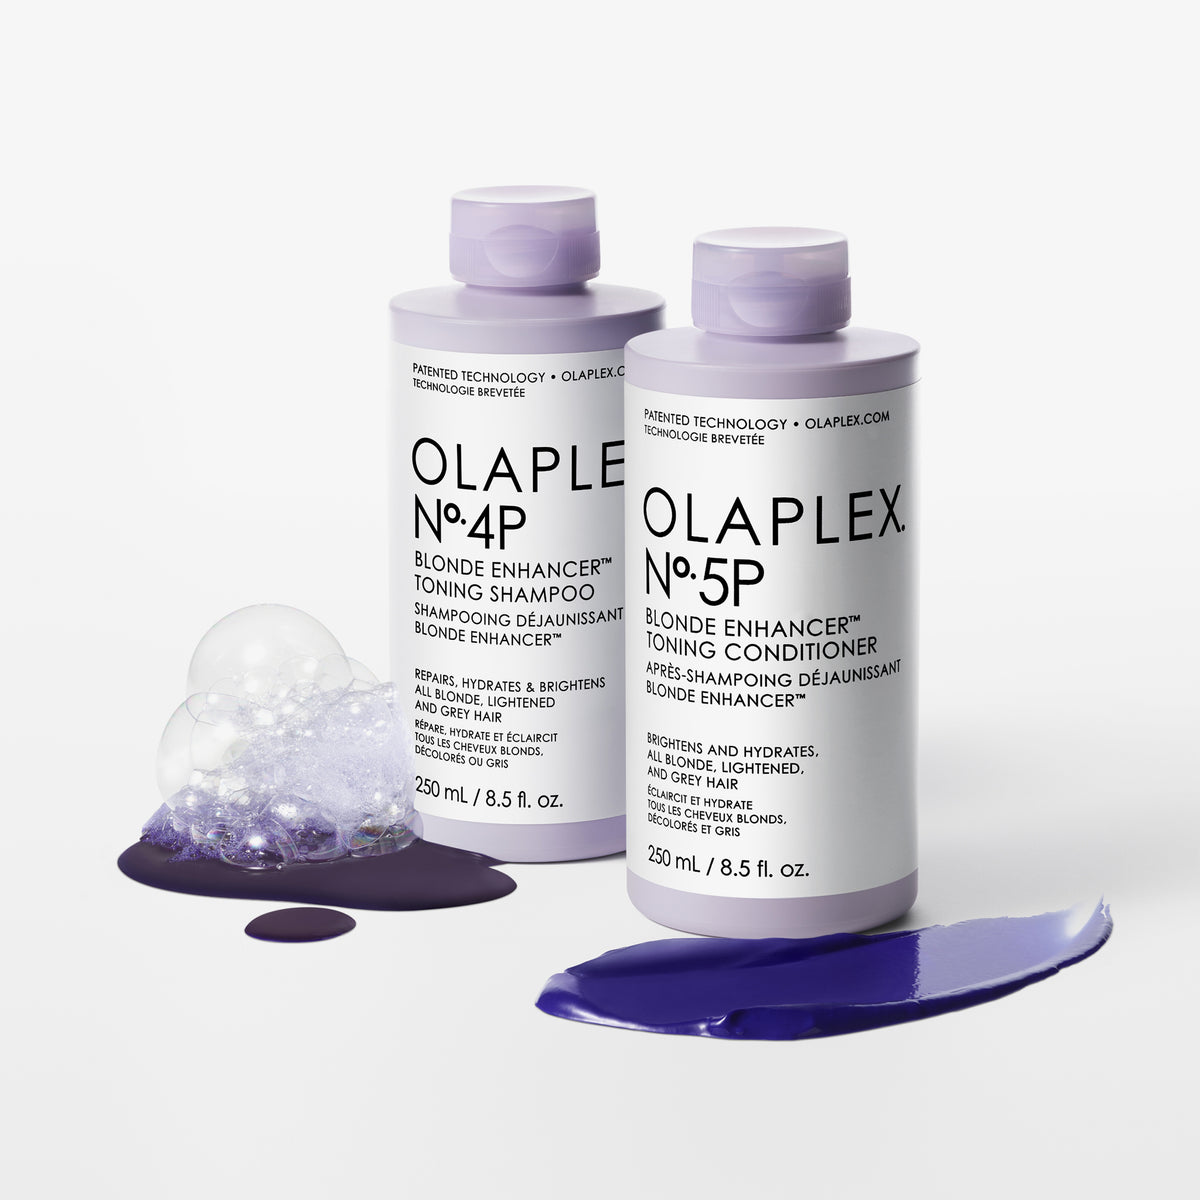 OLAPLEX | No.5P Blonde Enhancer Toning Conditioner